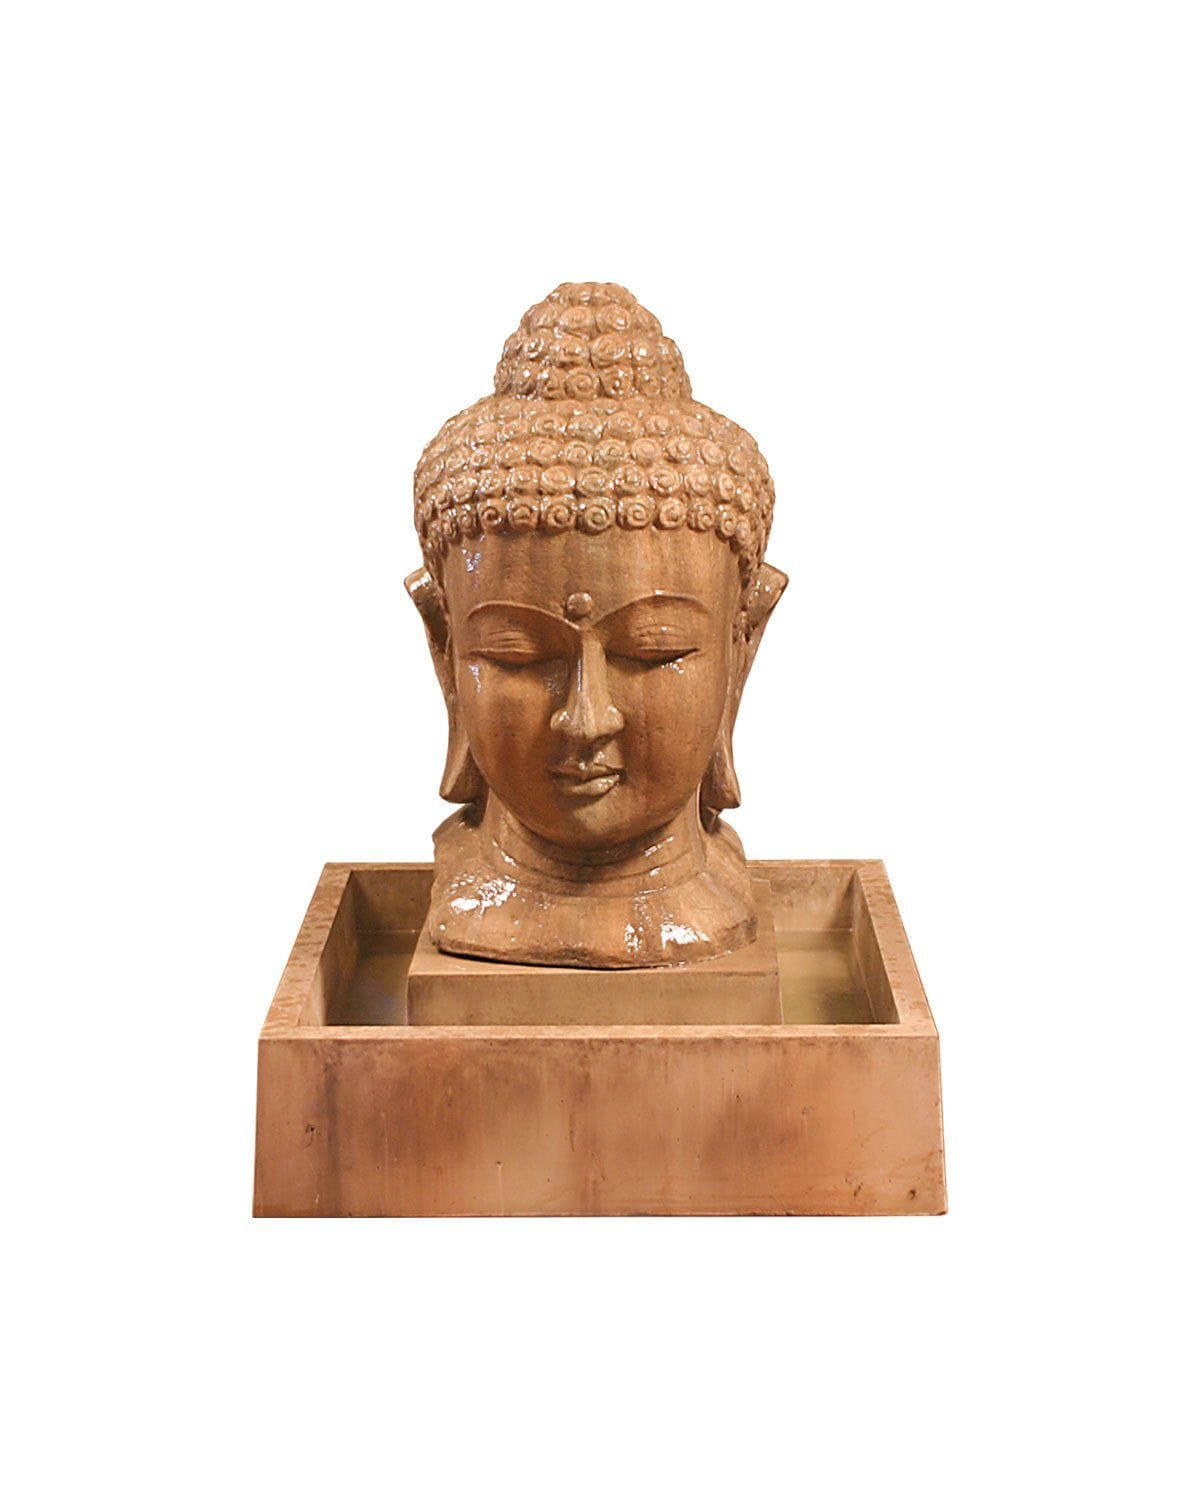 G-BHEAD-FTN SM GFRC Gist Buddha Head Fountain (Small) - 32W x 40H Gist